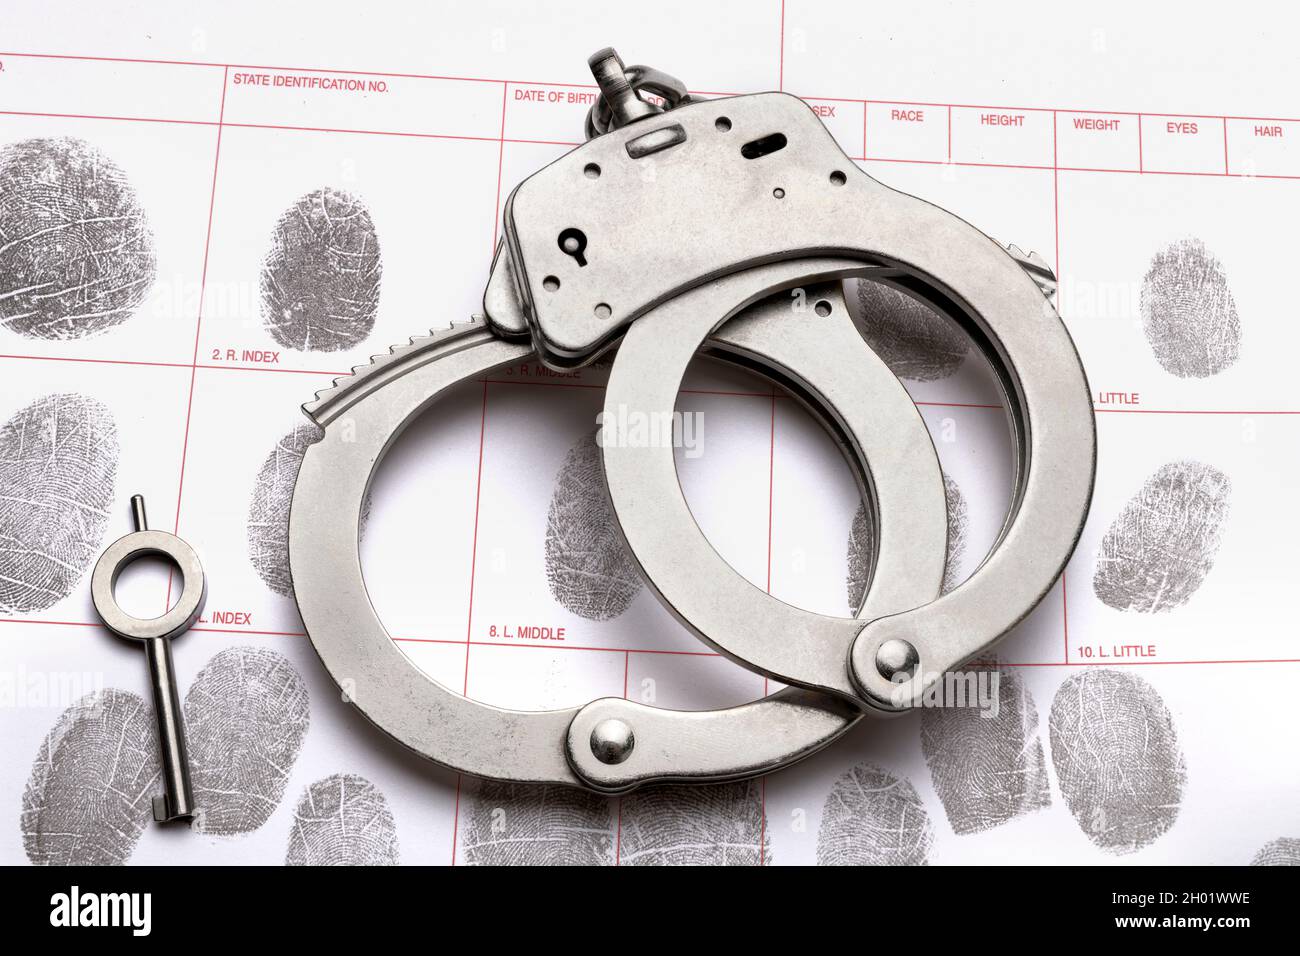 Ein Paar Handschellen und der Schlüssel liegen auf einer Fingerabdruck-ID-Buchungskarte, was auf Kriminalität, Rechenschaftspflicht, Bestrafung und Strafverfolgung schließen lässt. Stockfoto